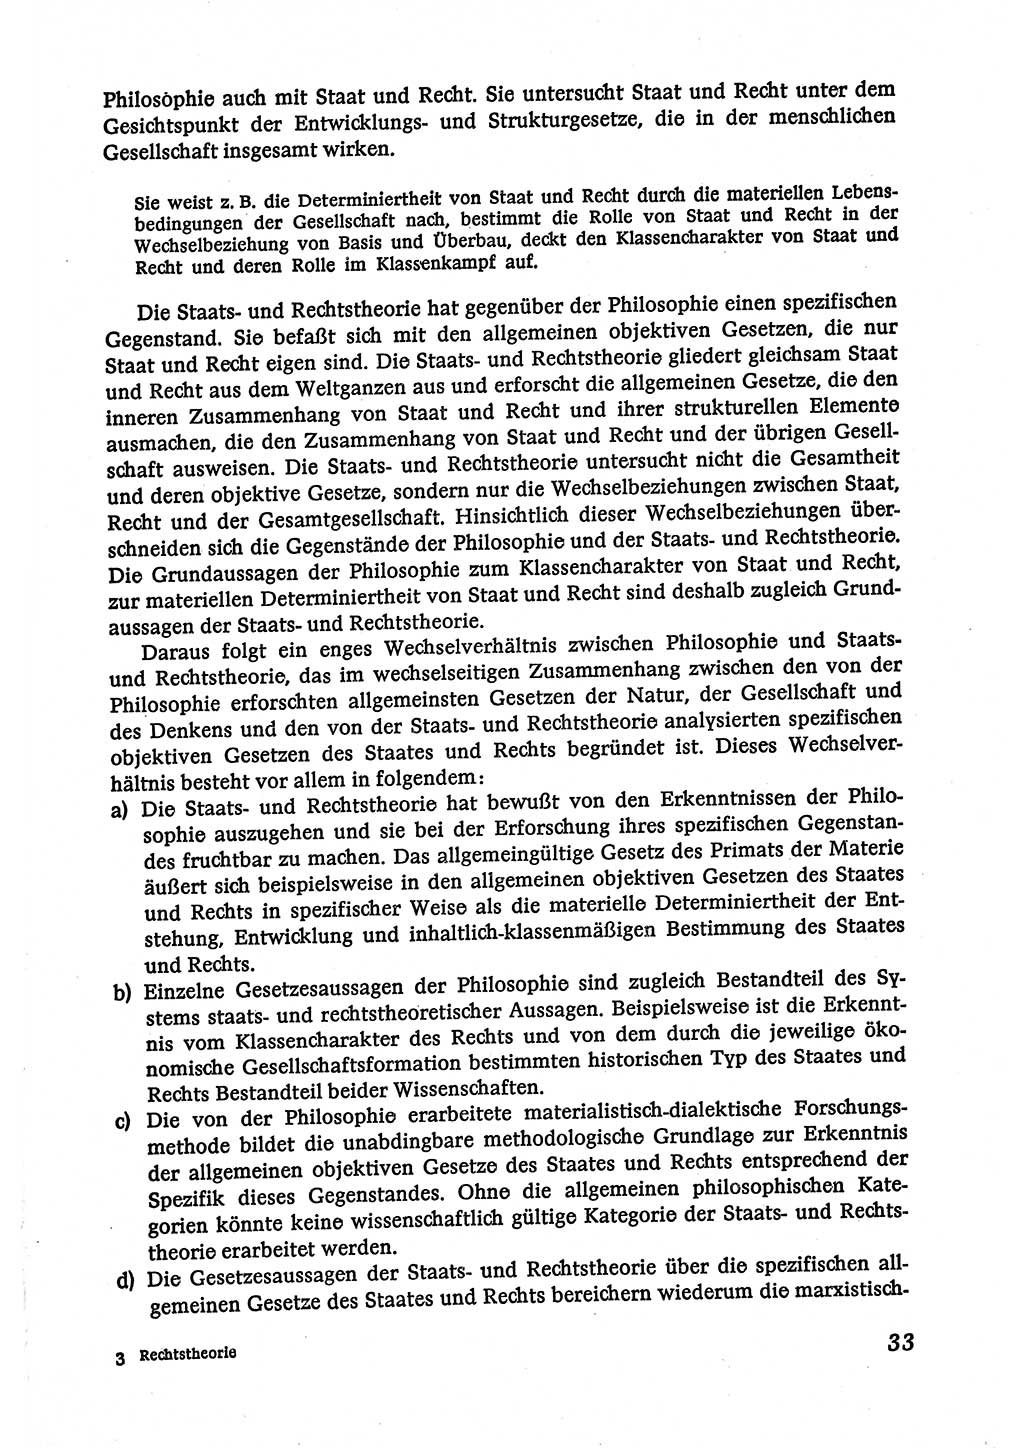 Marxistisch-leninistische (ML) Staats- und Rechtstheorie [Deutsche Demokratische Republik (DDR)], Lehrbuch 1980, Seite 33 (ML St.-R.-Th. DDR Lb. 1980, S. 33)